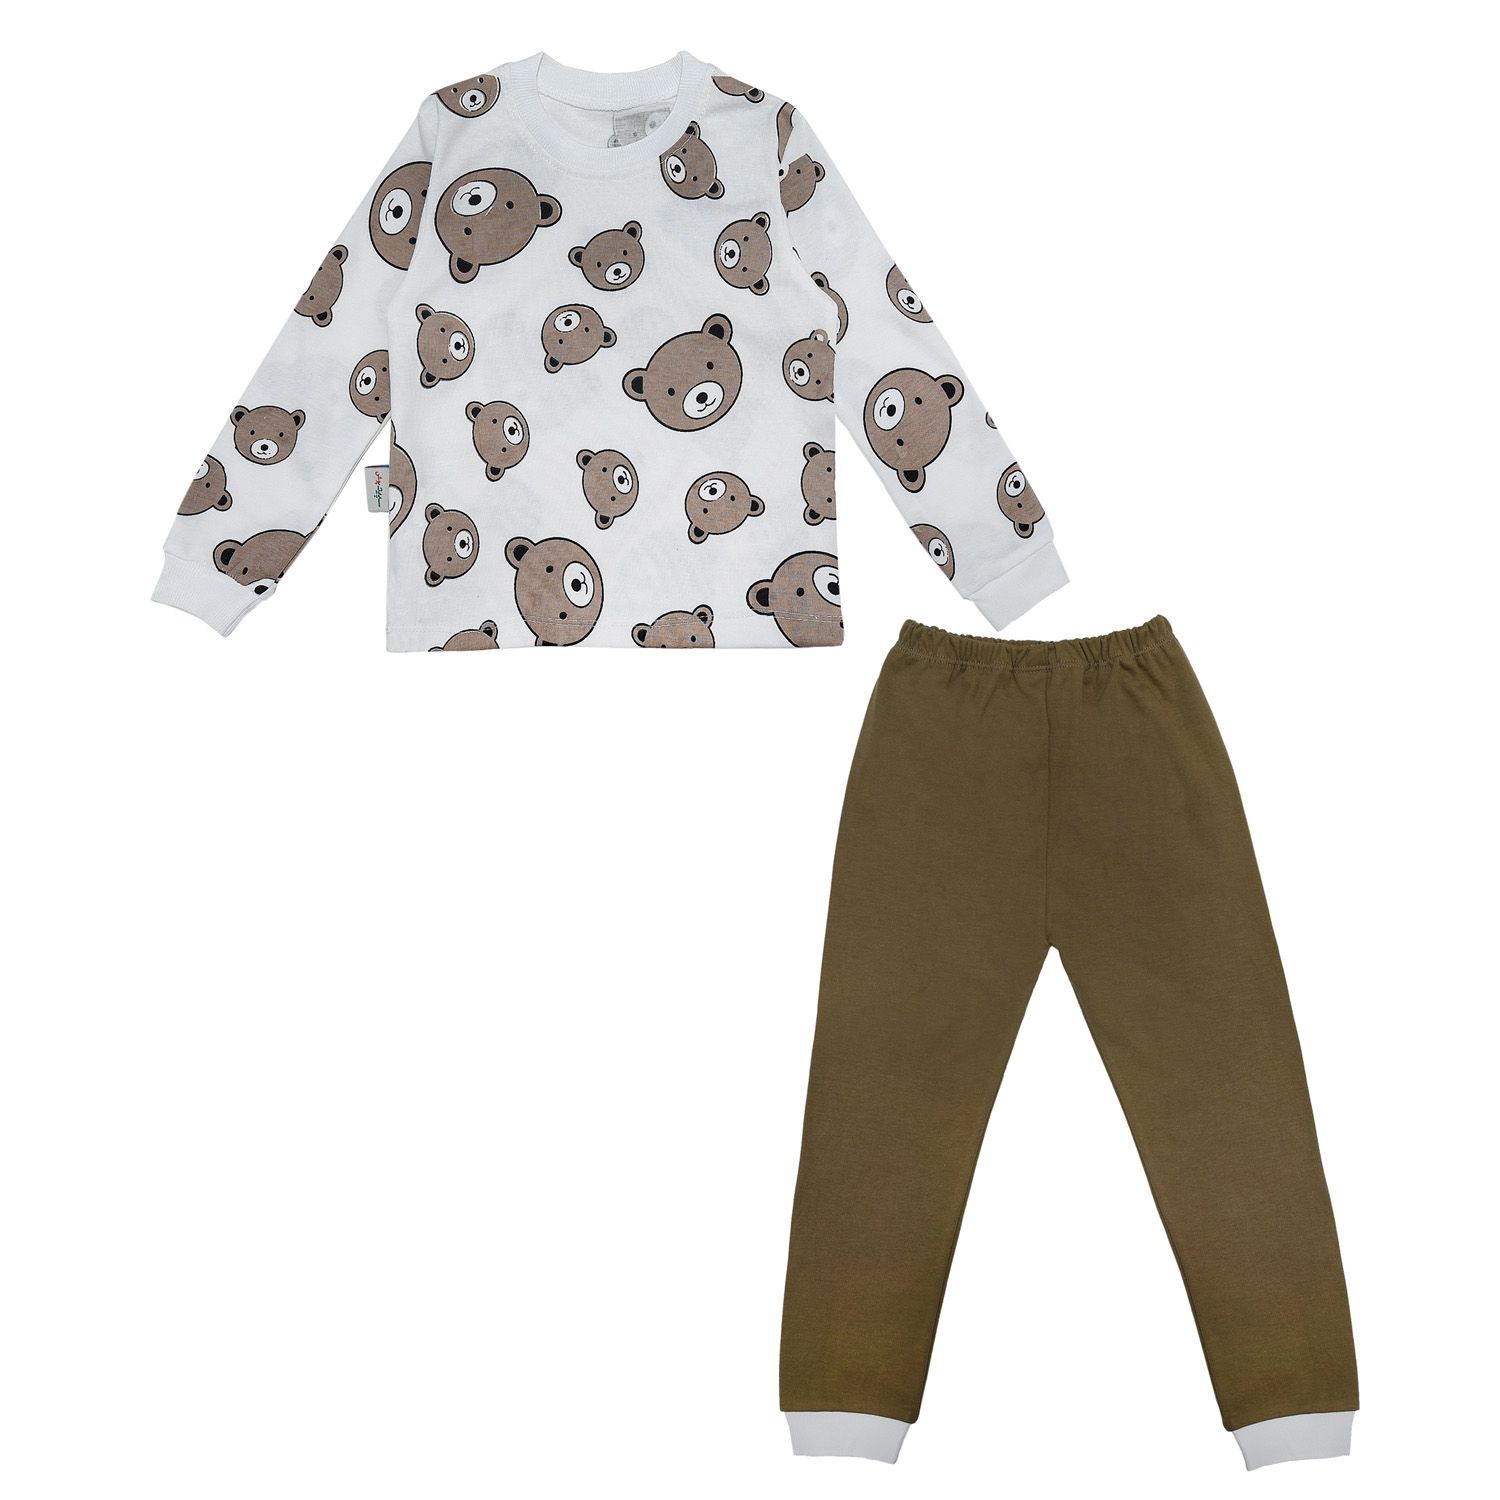 ست تی شرت آستین بلند و شلوار بچگانه سپیدپوش مدل خرس شکلاتی کد 1402753 -  - 10